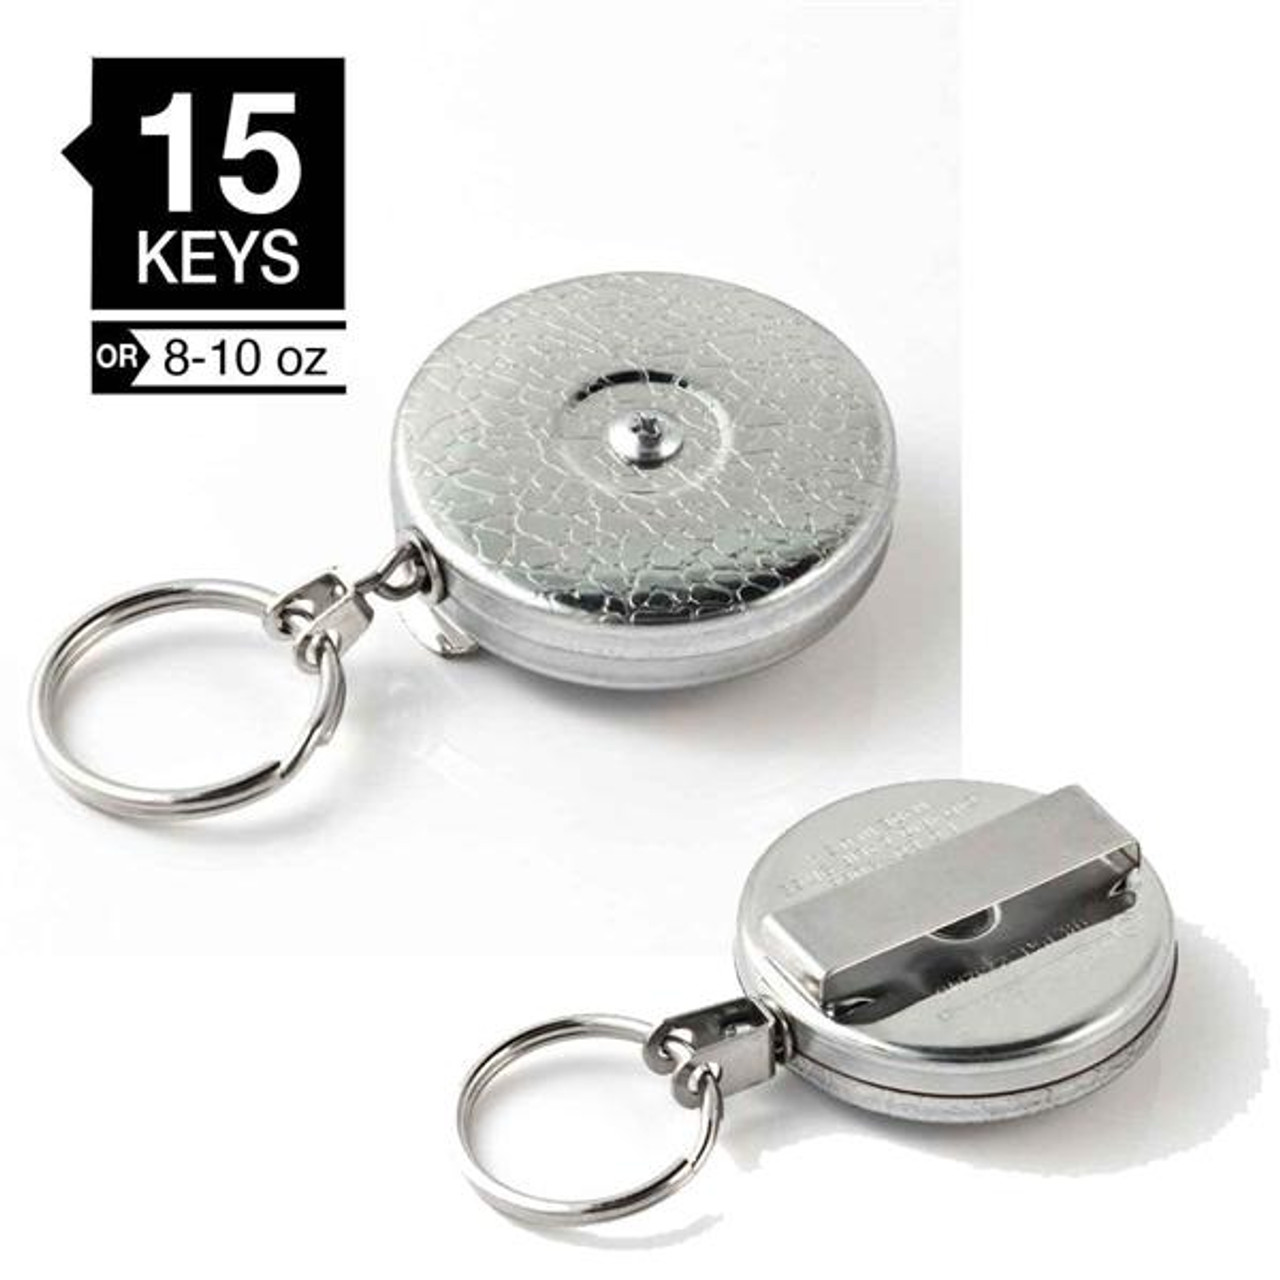 KEY-BAK Original HD Retractable Keychain with 48 in. Retractable